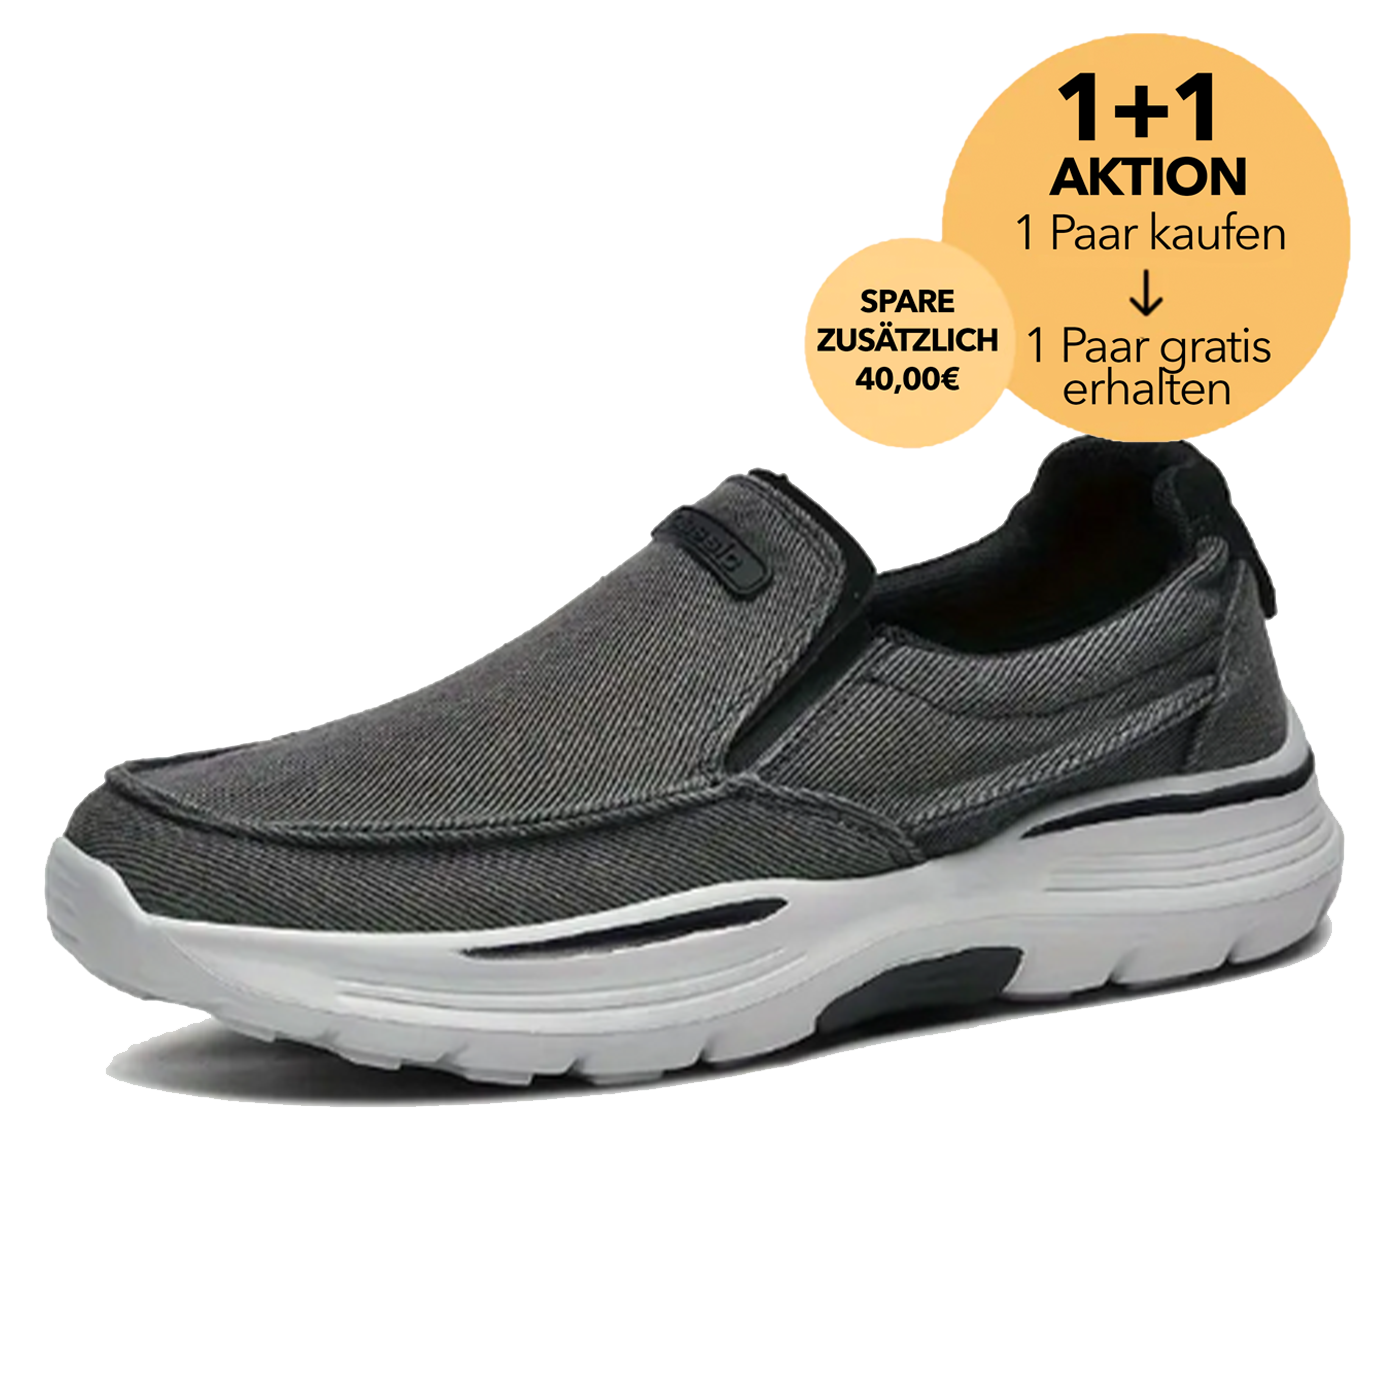 OrthoWohl 2.0 - stilvoller Orthopädischer Schuh für ergonomische Schmerzlinderung